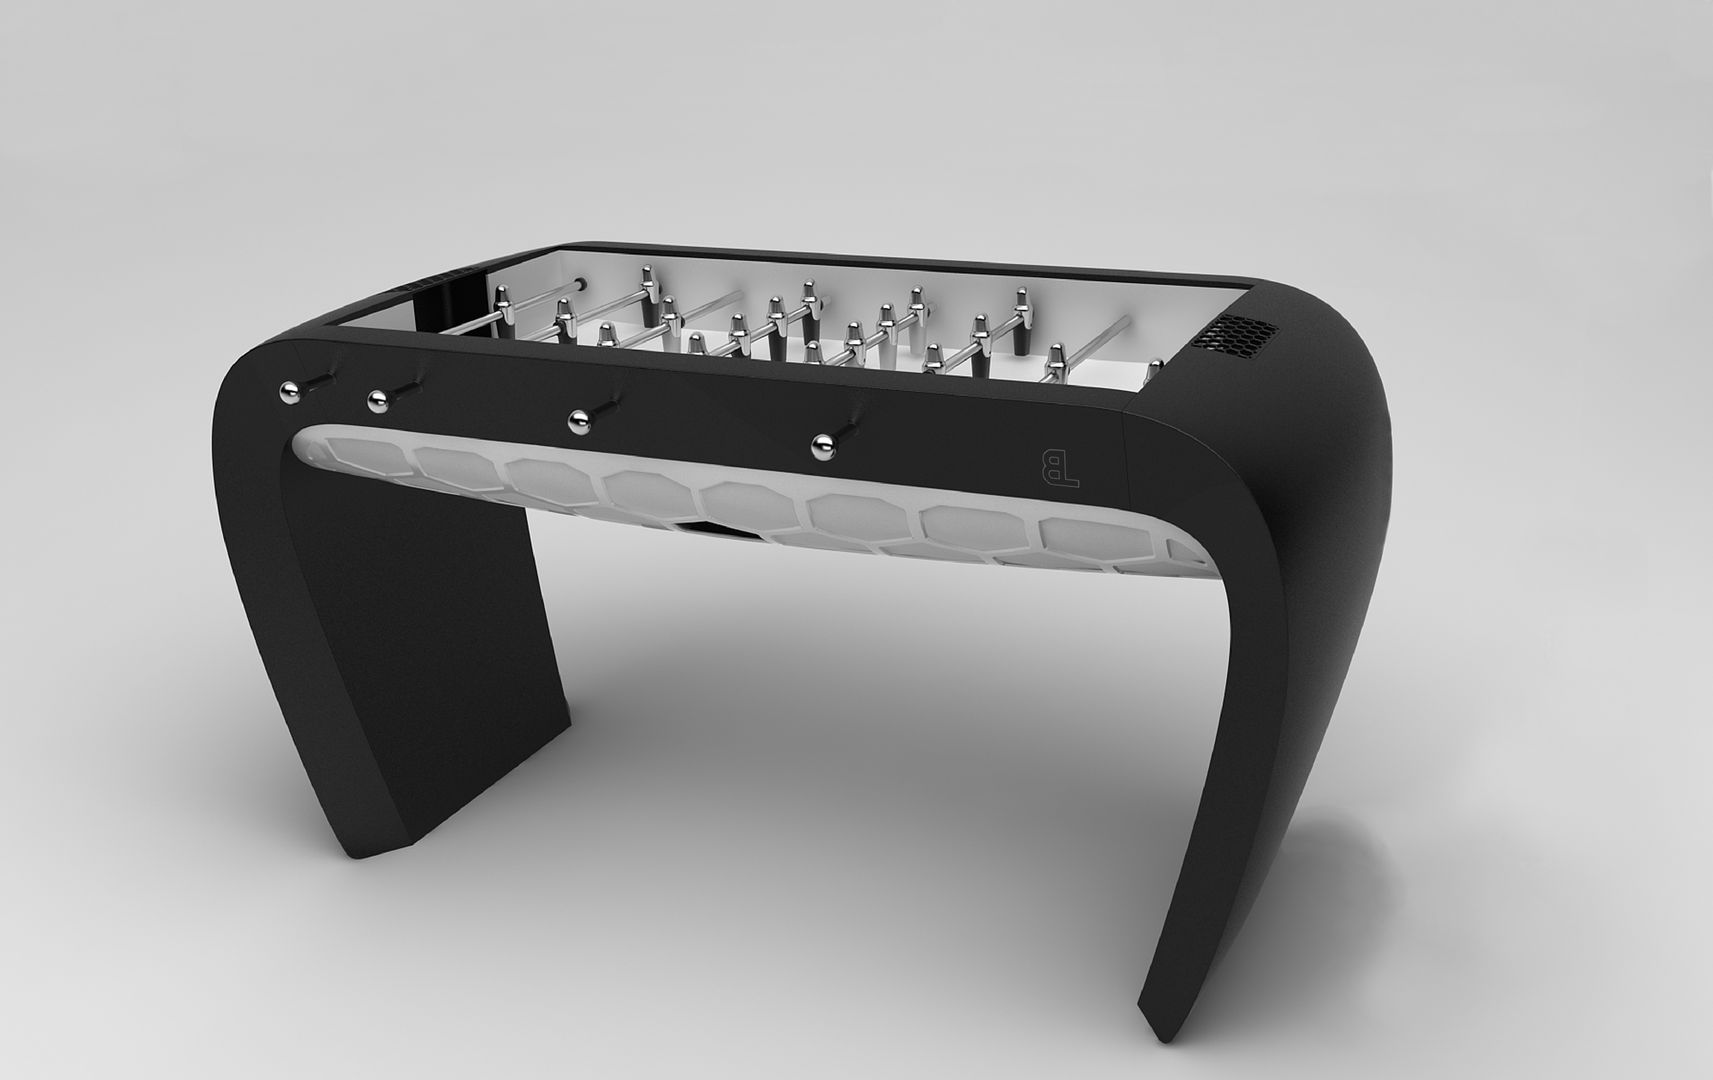 Blackball Foosball Table, Quantum Play Quantum Play モダンデザインの 多目的室 家具